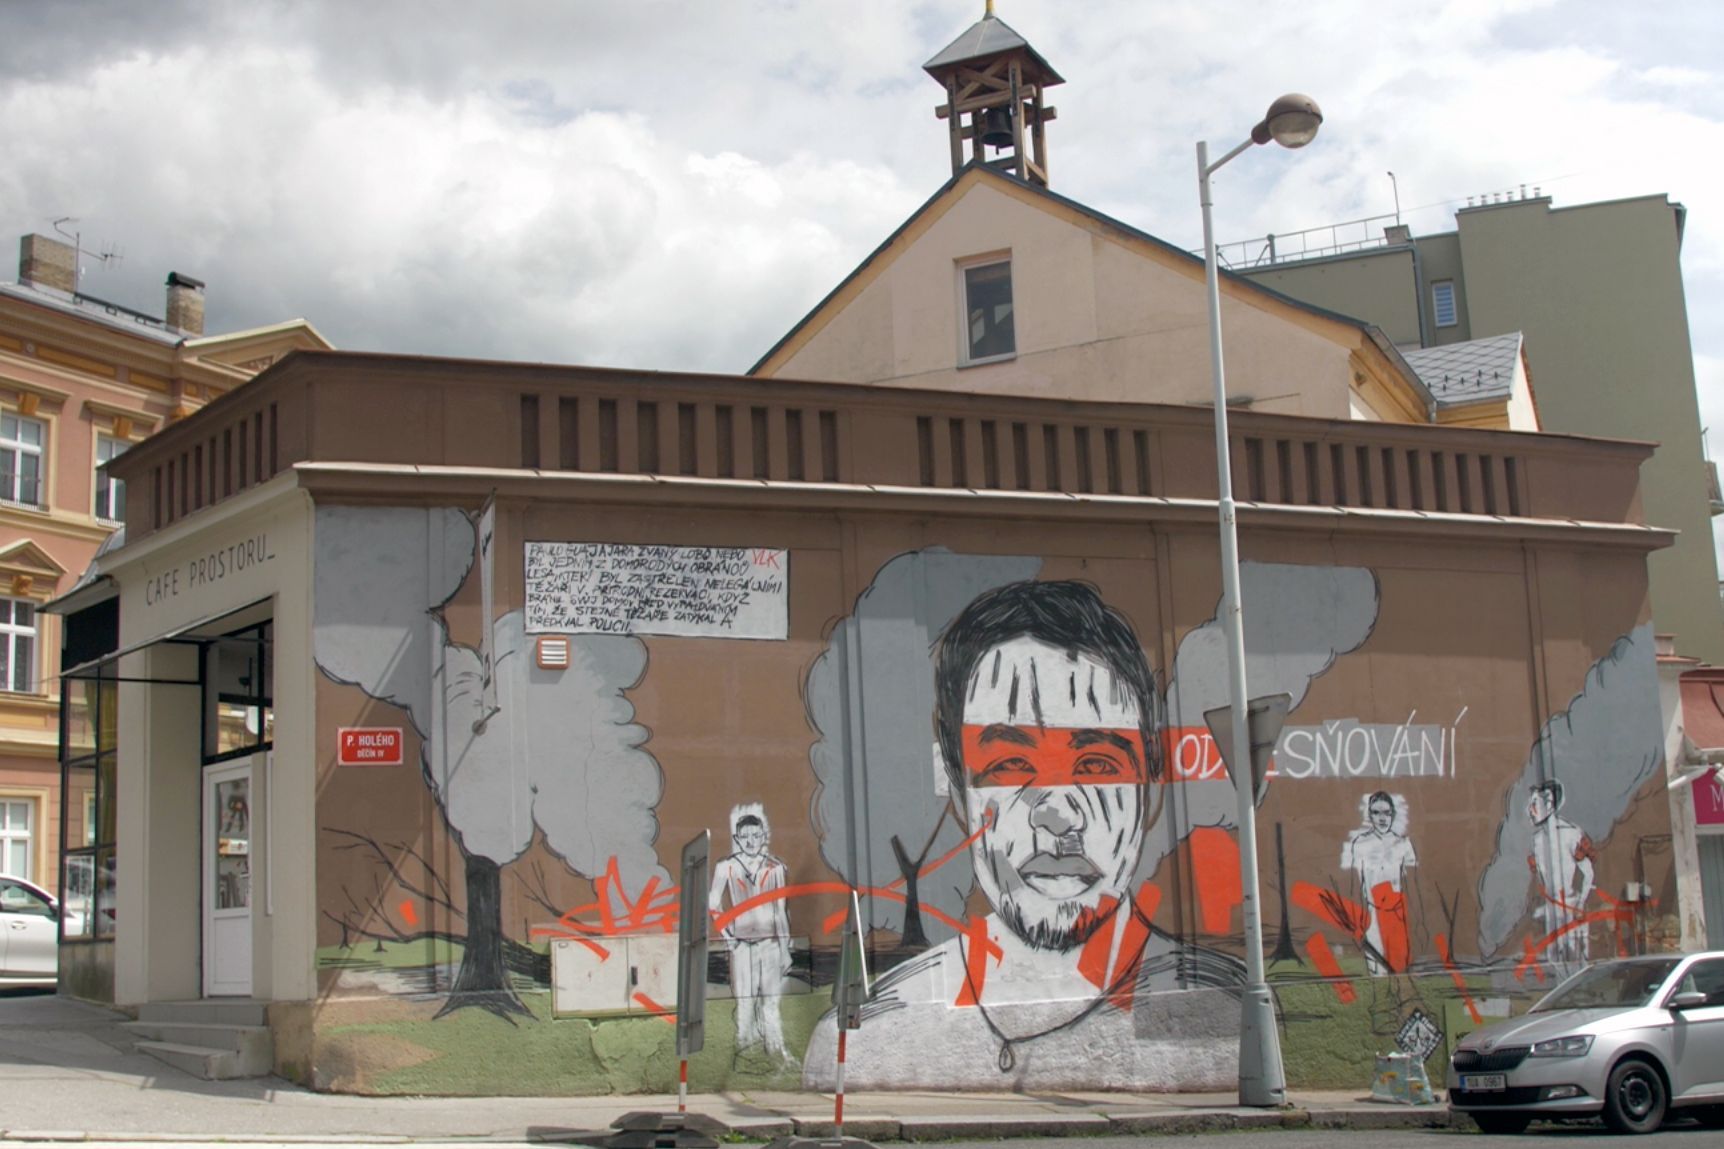 Výtvarnice Toy_Box vytvořila mural / graffiti v Děčíně - Tváře klimatické změny, klima, Člověk v tísni